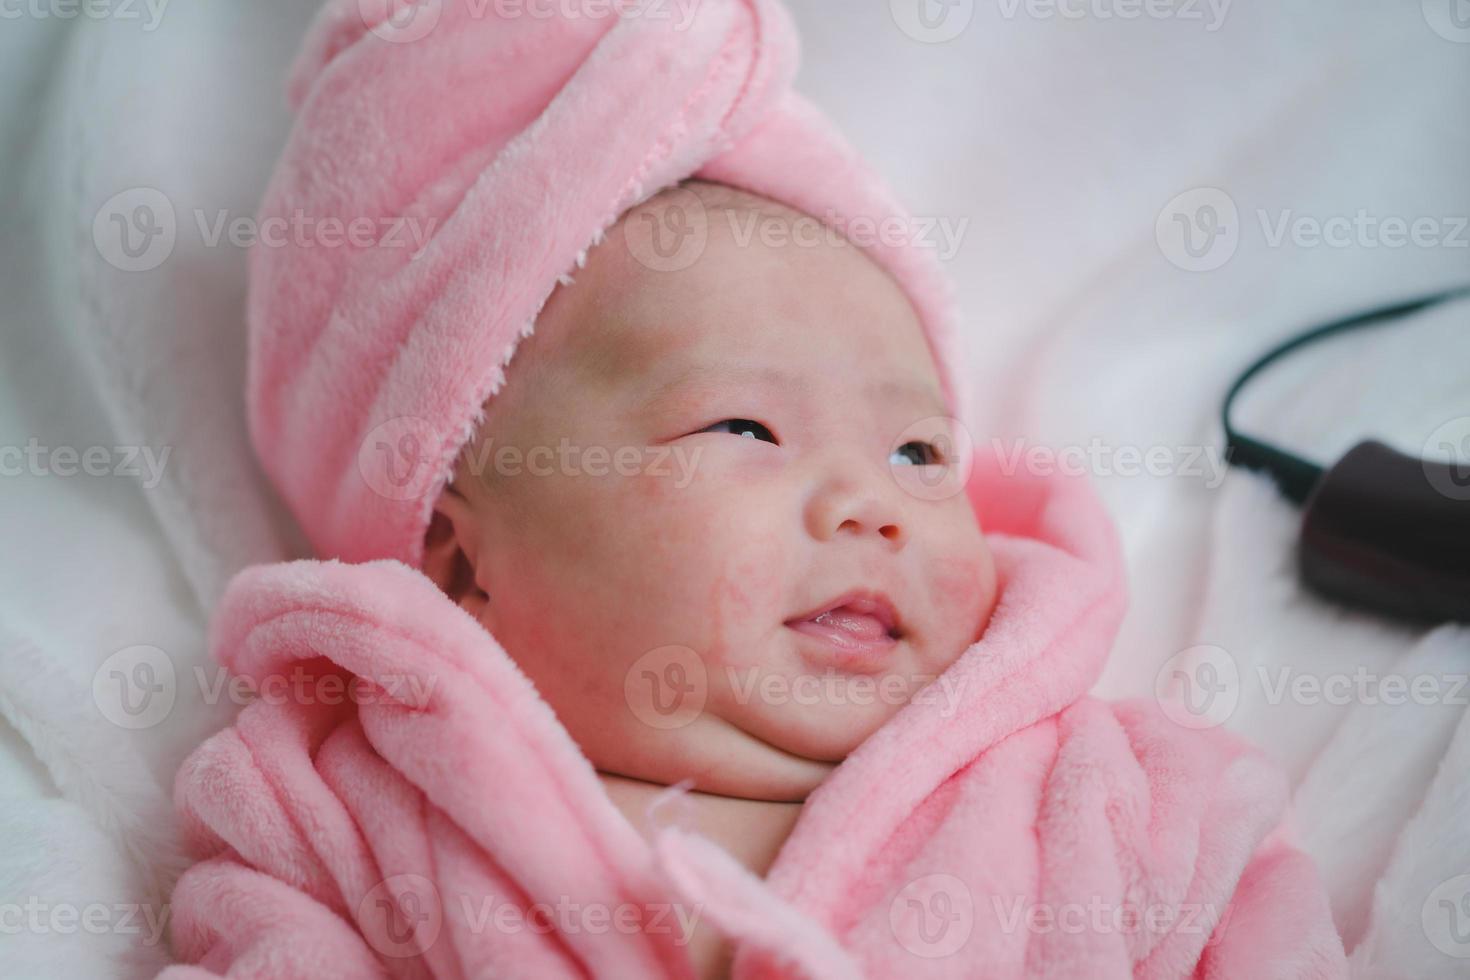 närbild söt nyfödd bebis i rosa kroppsdräkt liggande ner ensam på säng. förtjusande spädbarn vilar på vit lakan, stirrande på kamera ser fredlig. barndom, sjukvård och pediatrik, barndom begrepp foto